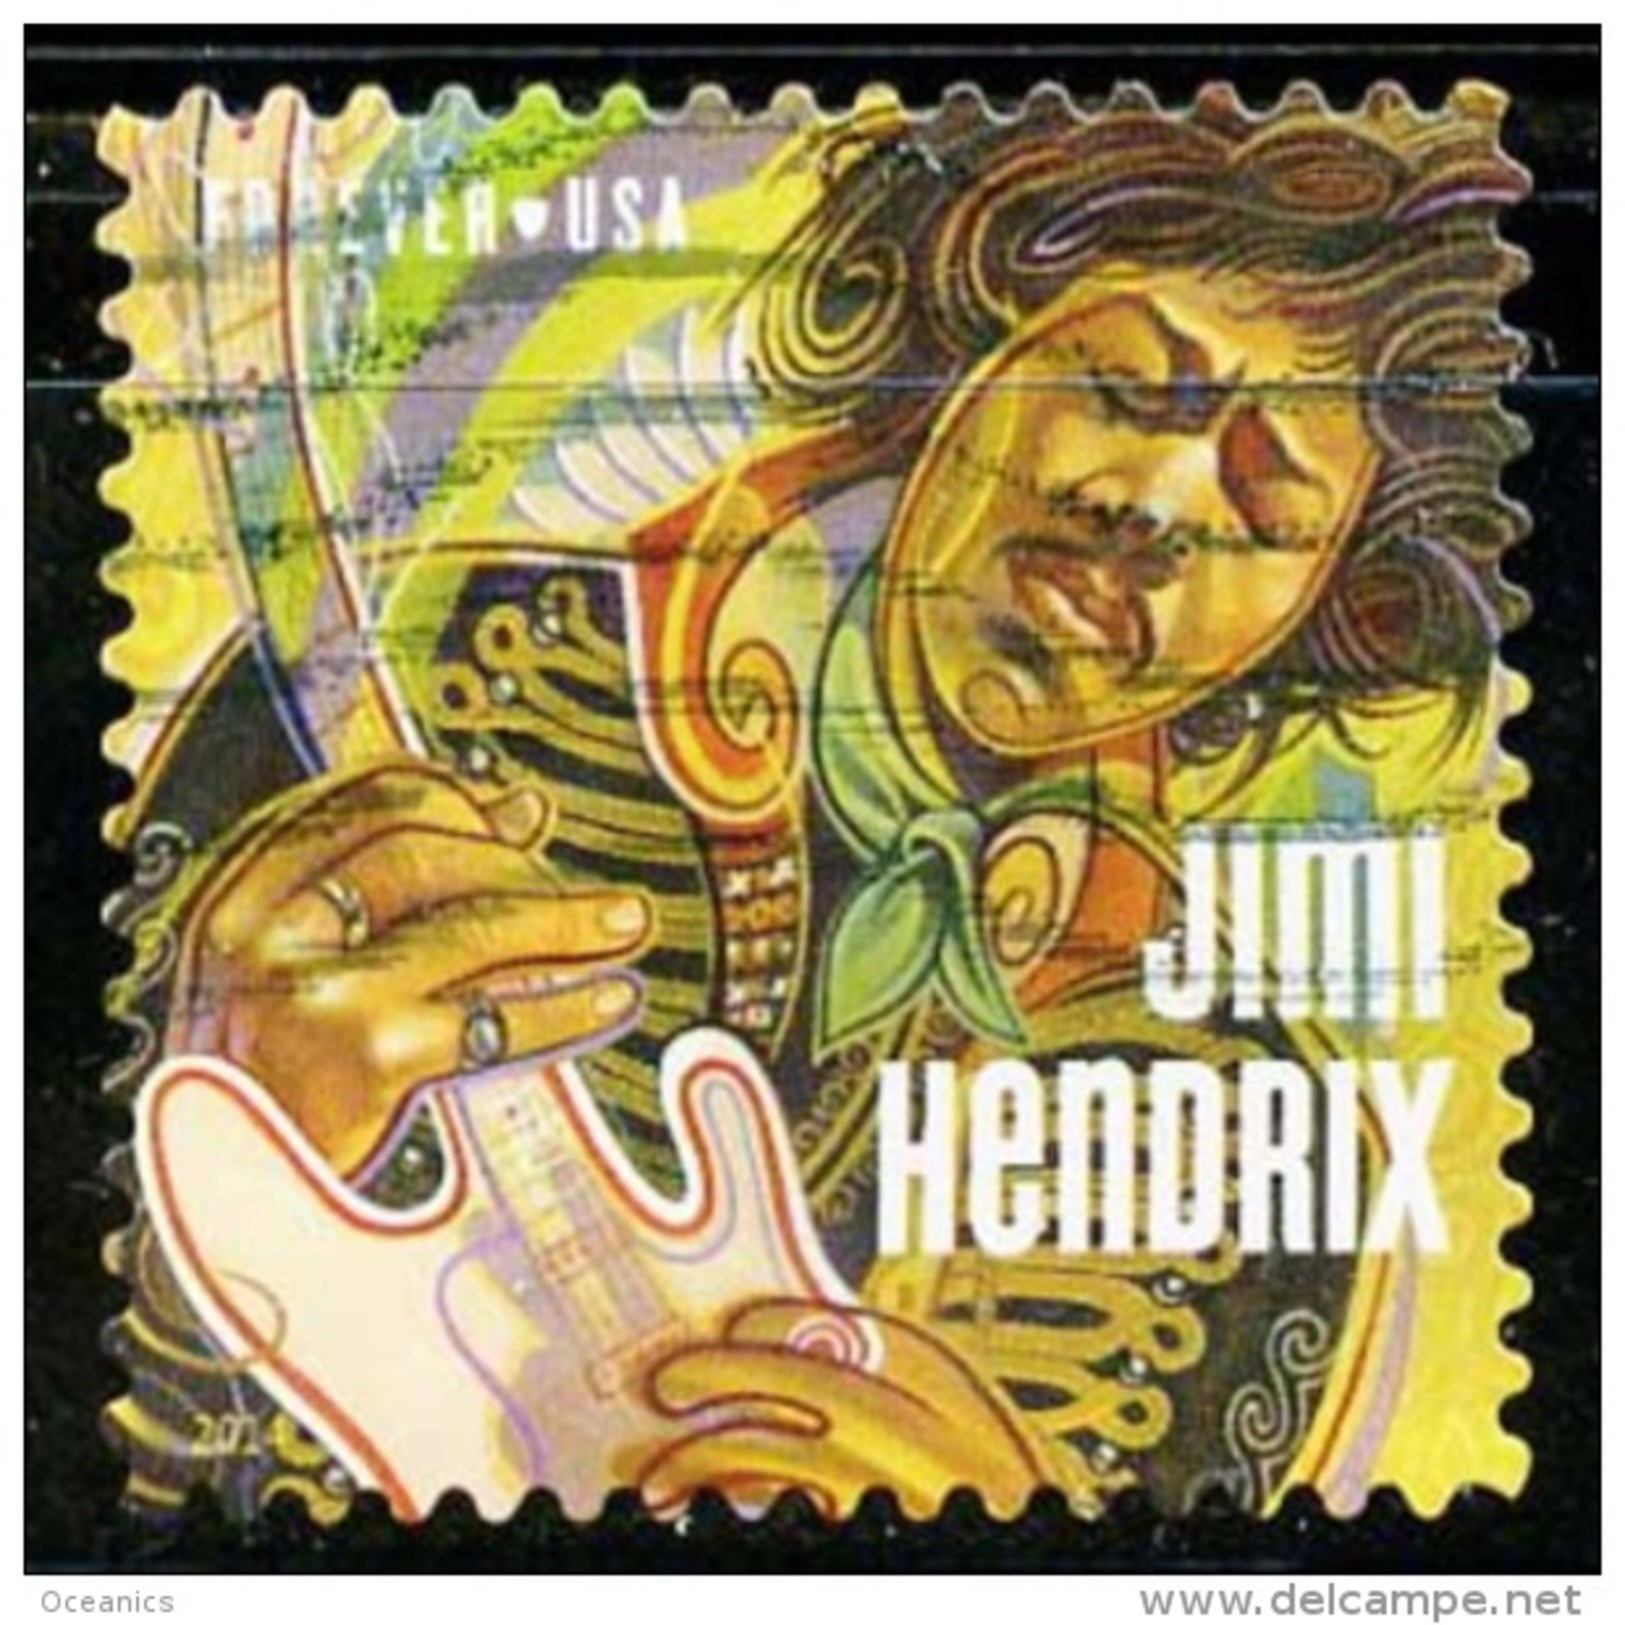 Etats-Unis / United States (Scott No.4880 - Jimmy Hendrix) (o) - Oblitérés